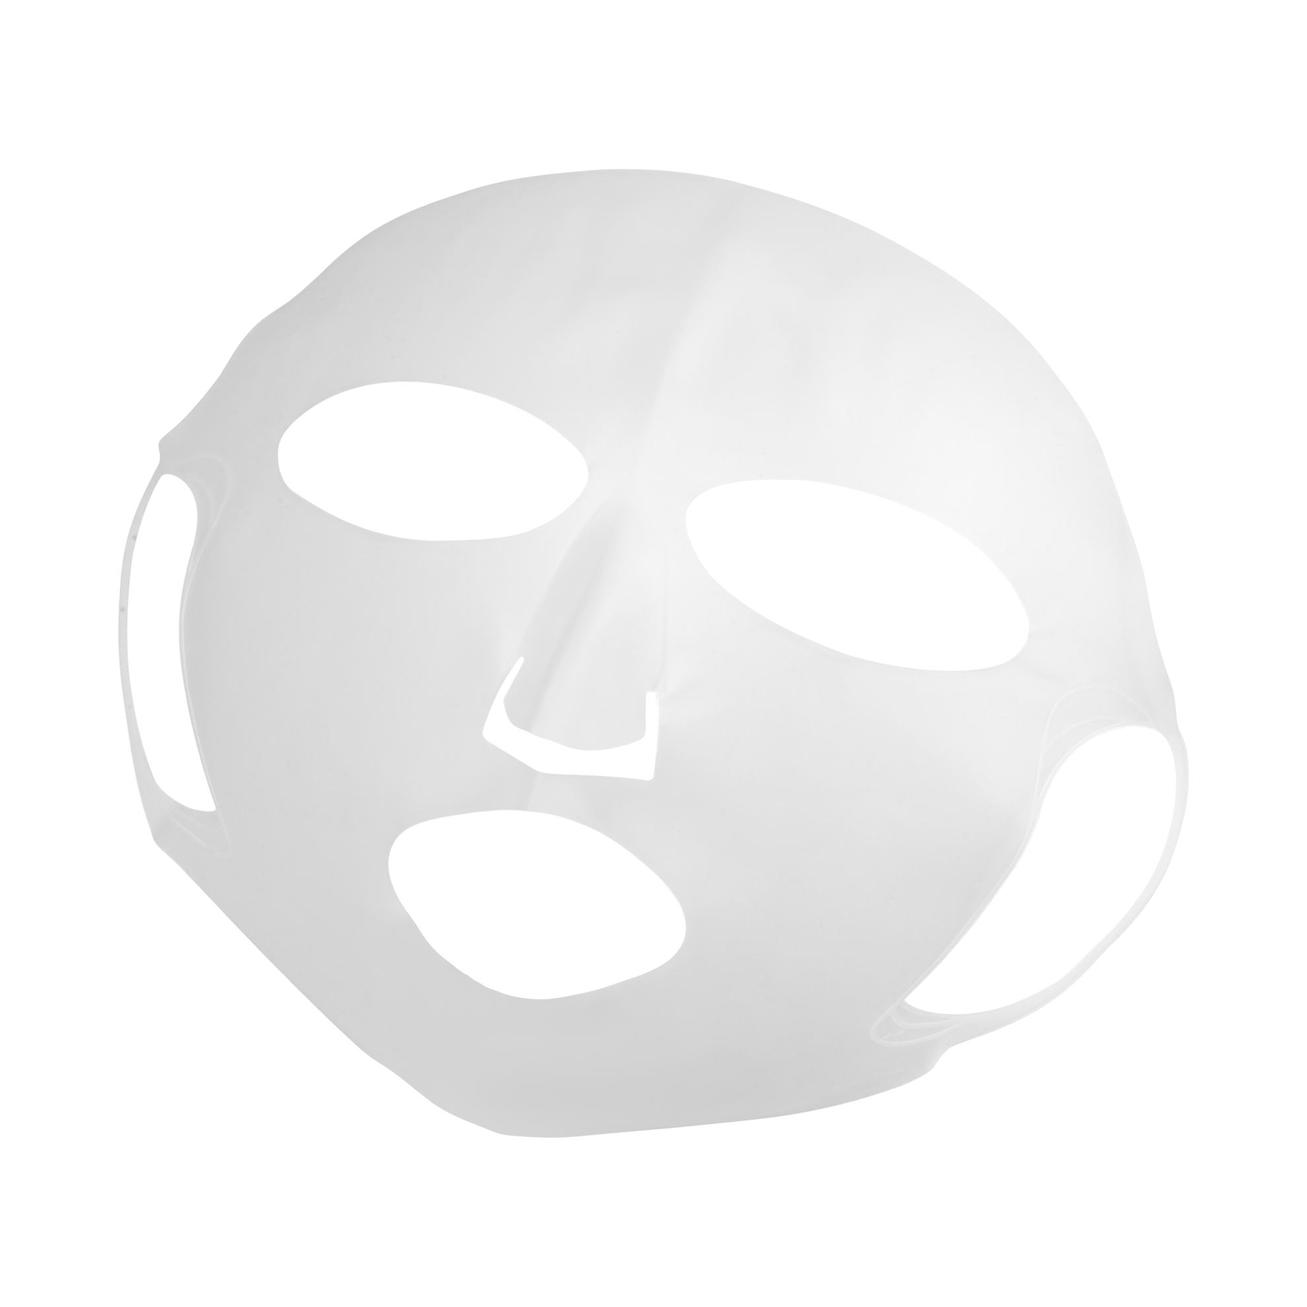 Oferta de Máscara Potenciadora de Serum y Mascarilla Oriflame Exklusiv por 8,99€ en Oriflame